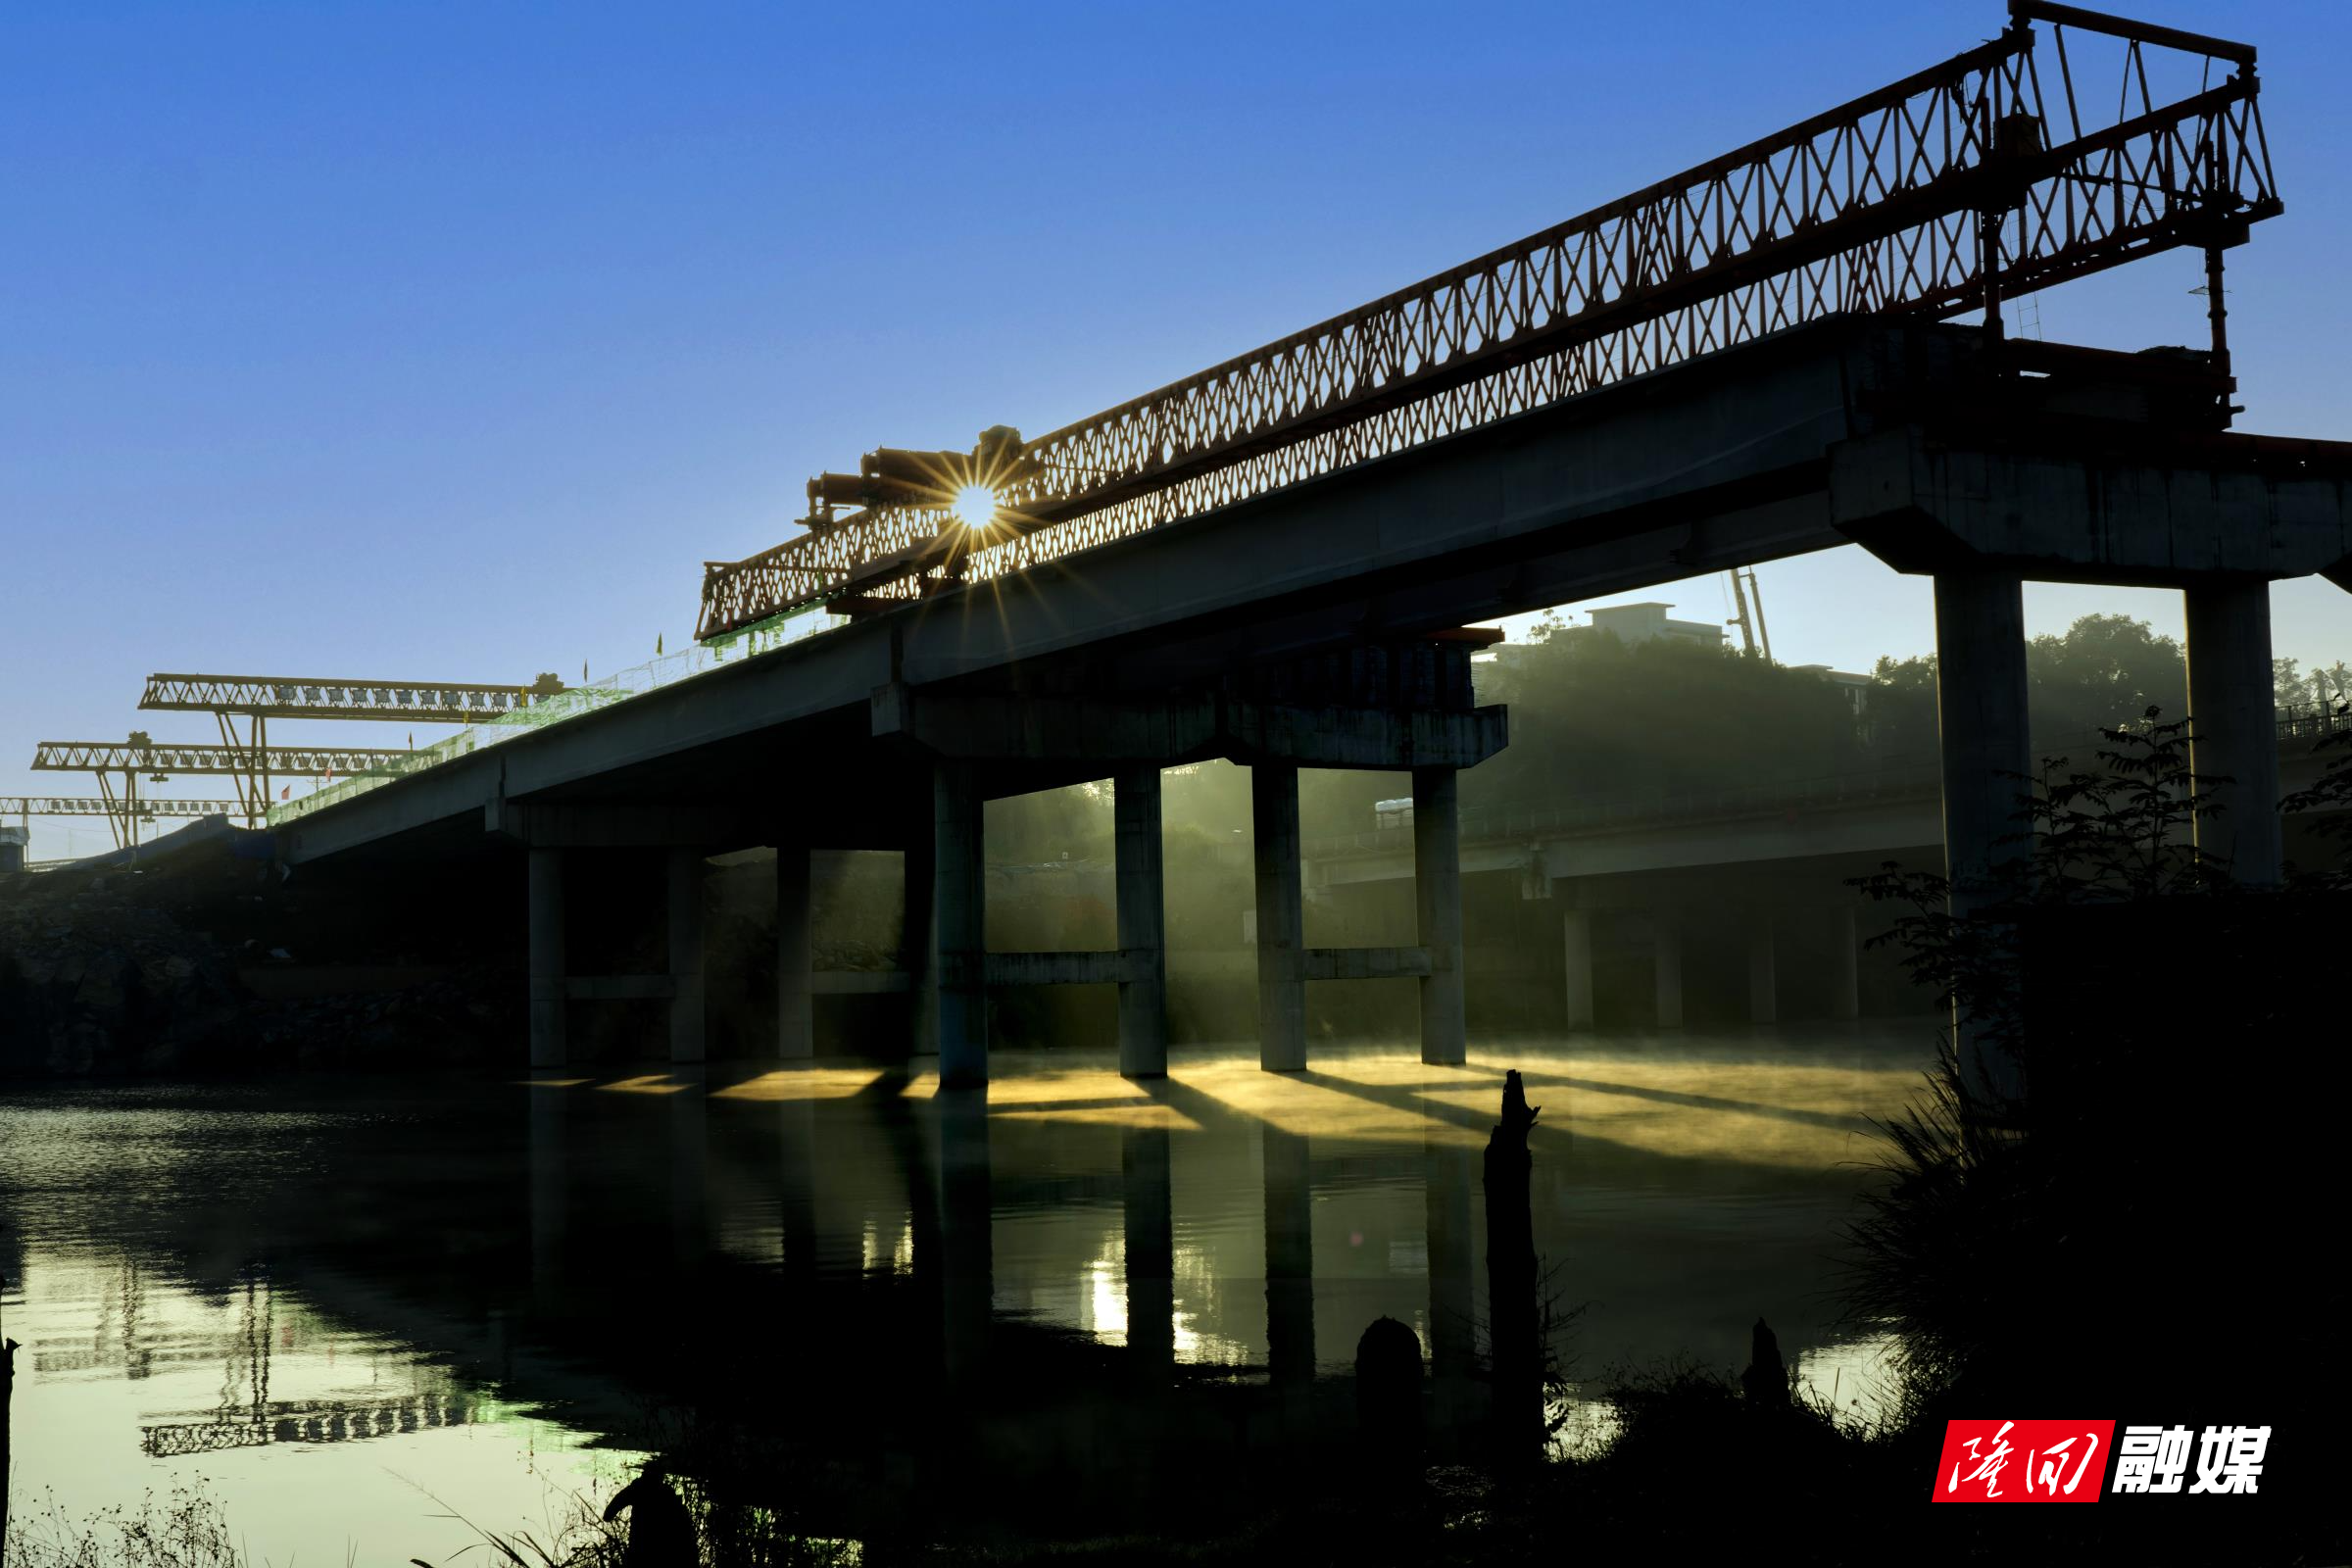 《在建的紫霞园大桥》 孙海娥13873956780拍摄于隆回县桃花坪.jpg